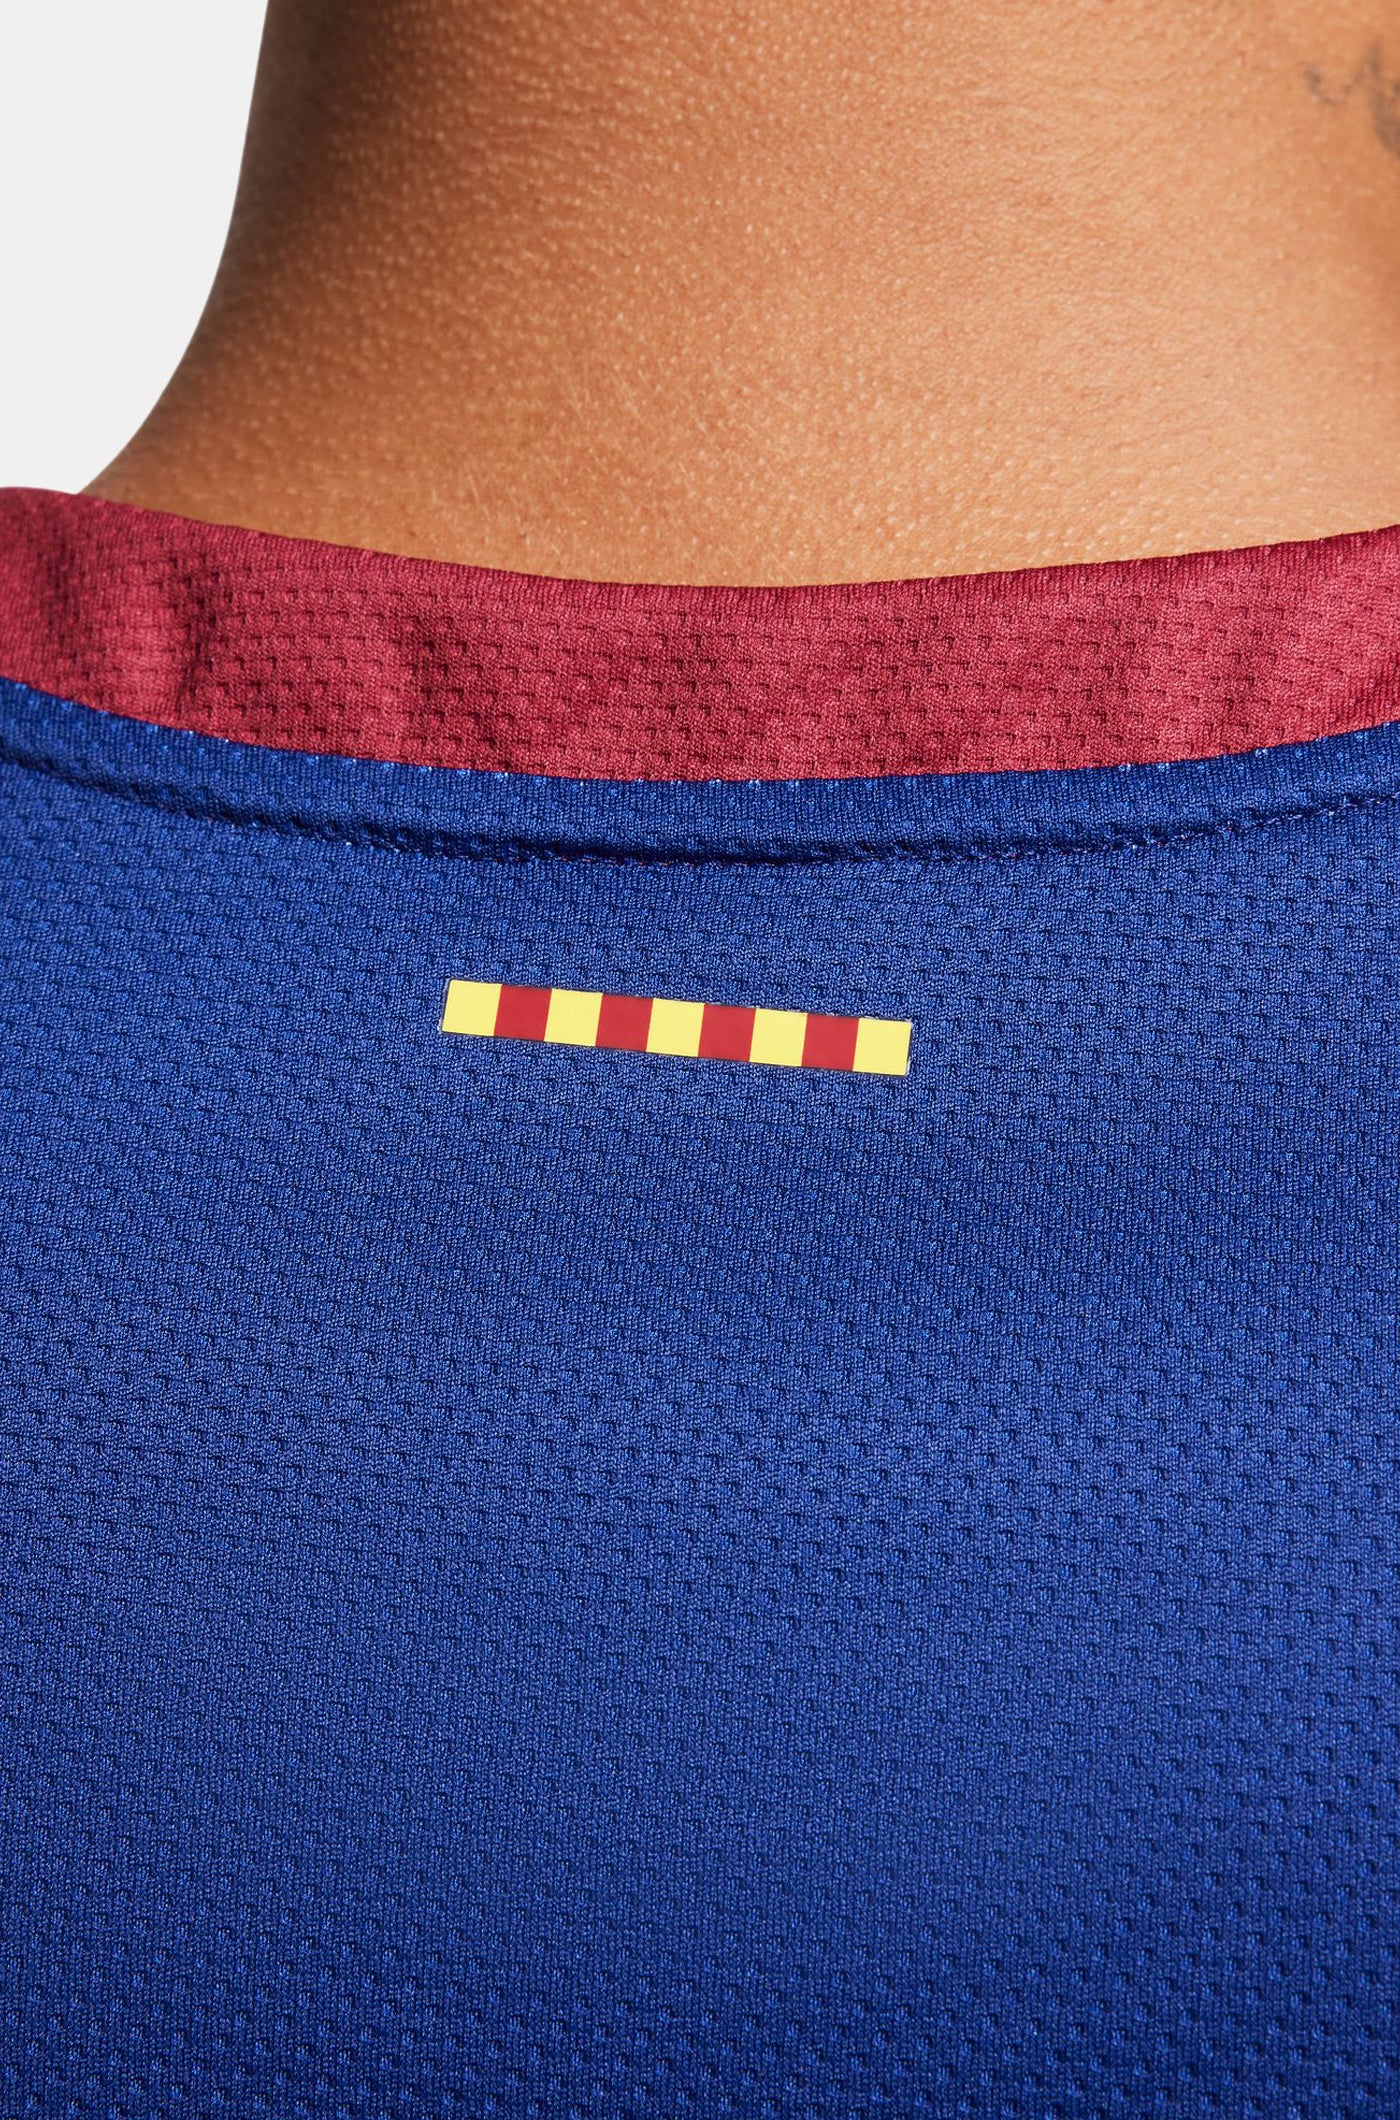 Euroleague Camiseta baloncesto primera Equipación FC Barcelona 23/24 - LAPROVITTOLA